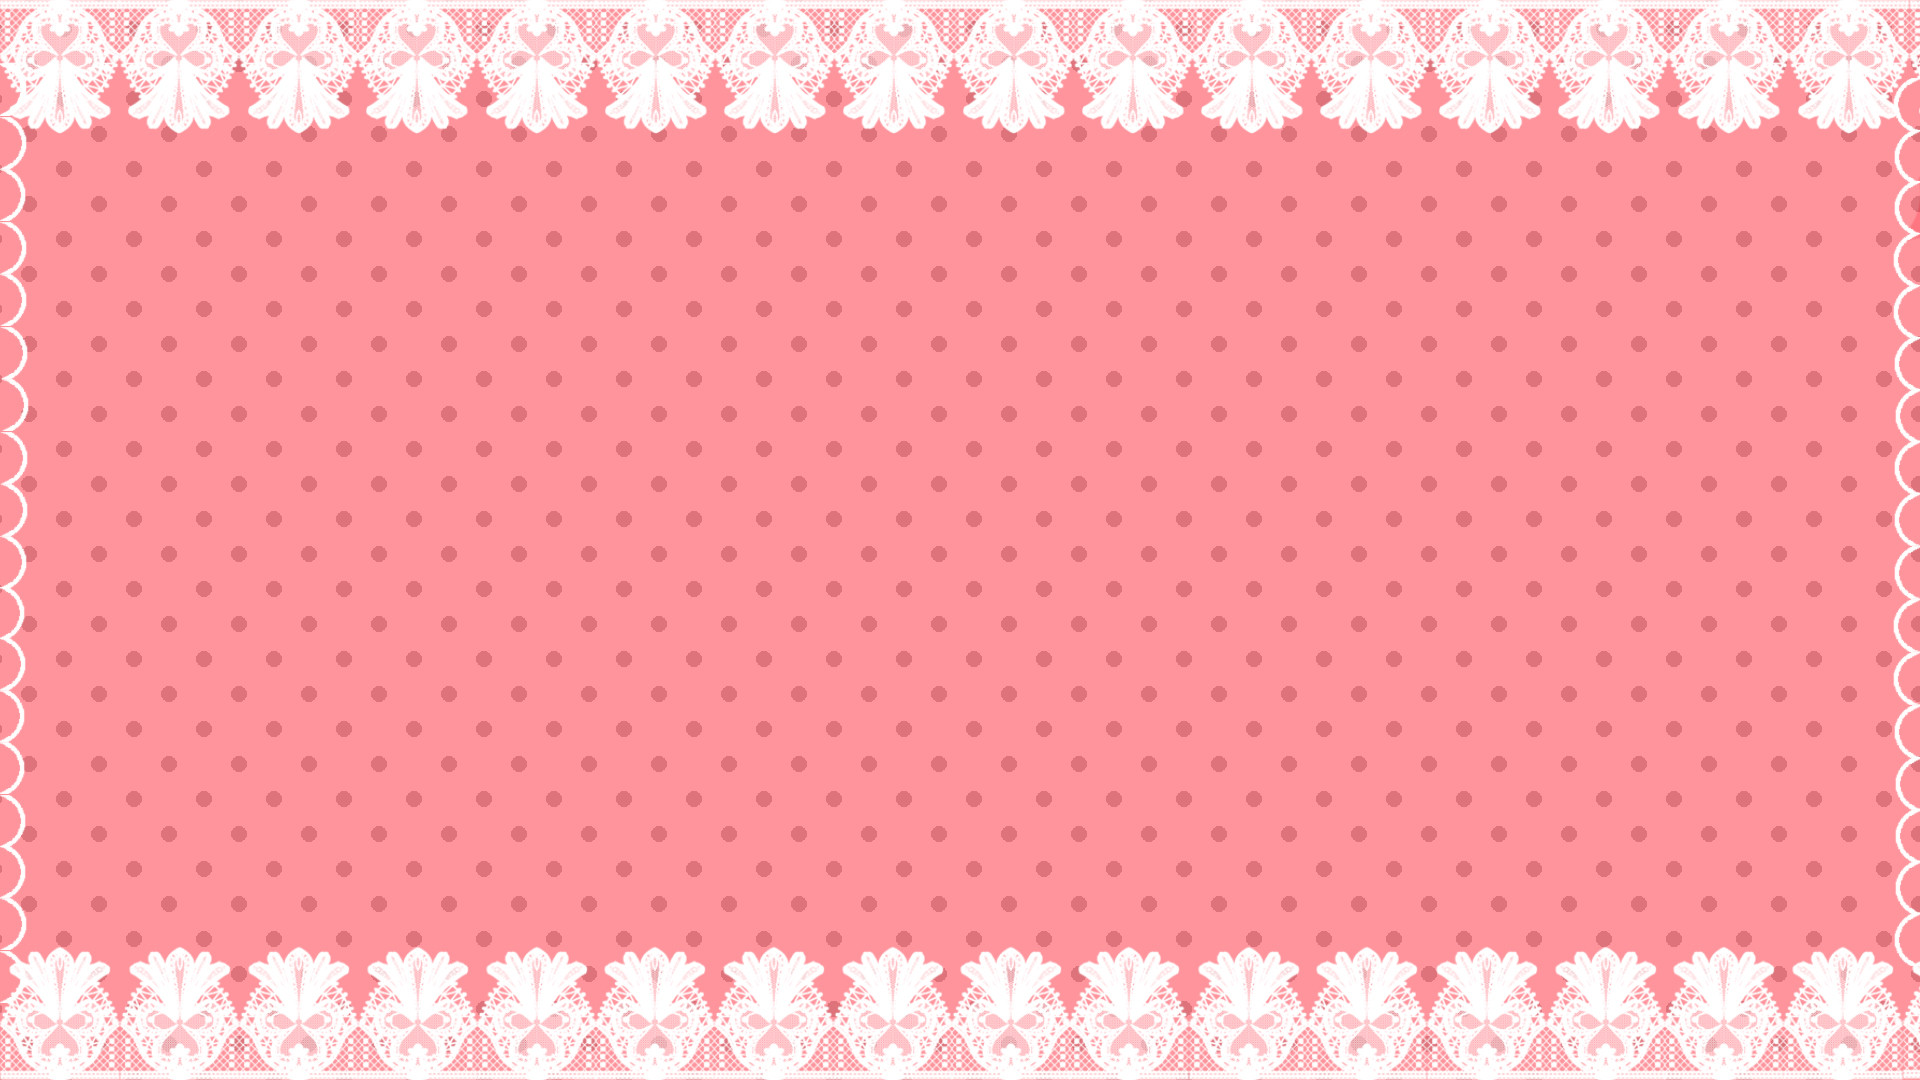 1920x1080 Cute pink polka dot background